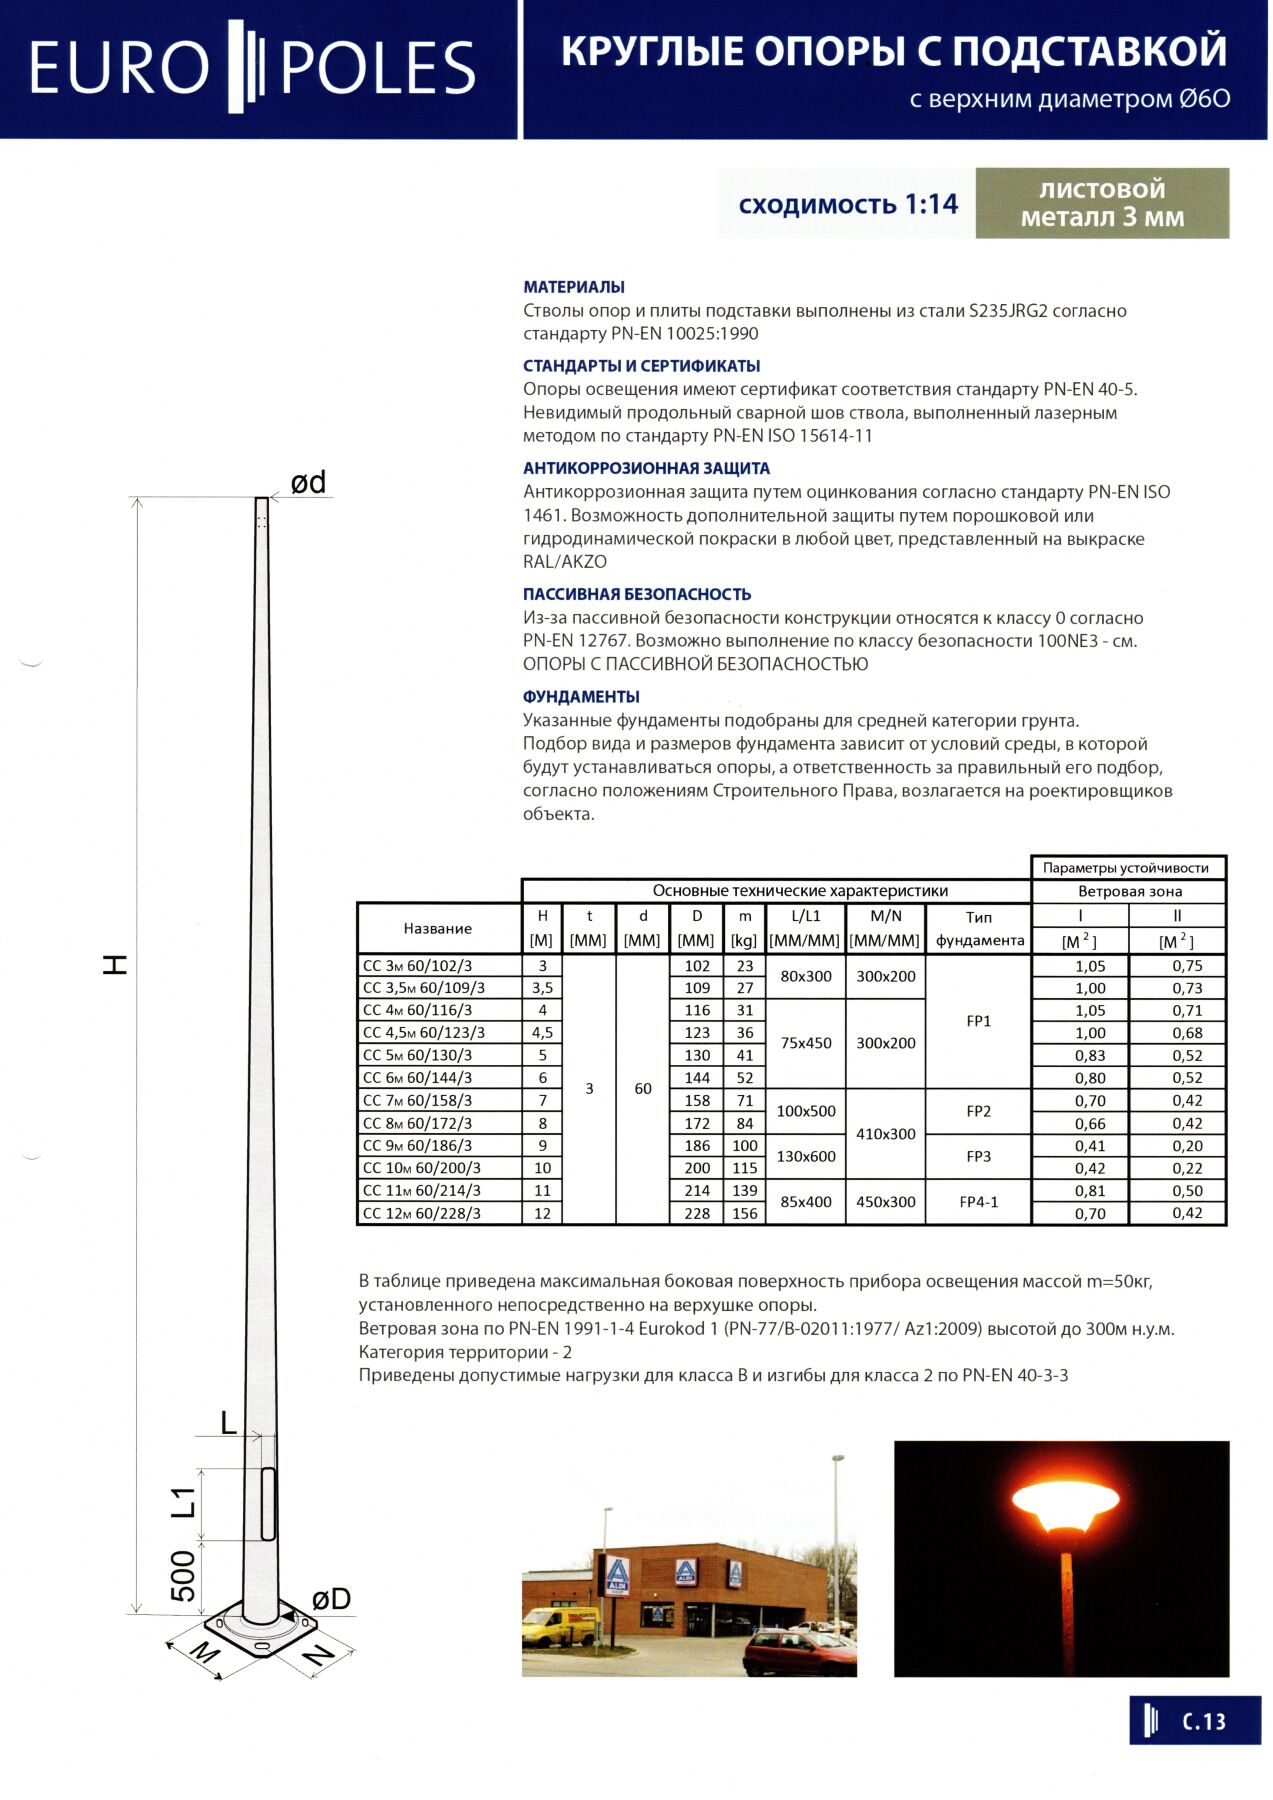 Galvanized round lighting pole EUROPOLES EUROPOLES СС 8М 60/172/3